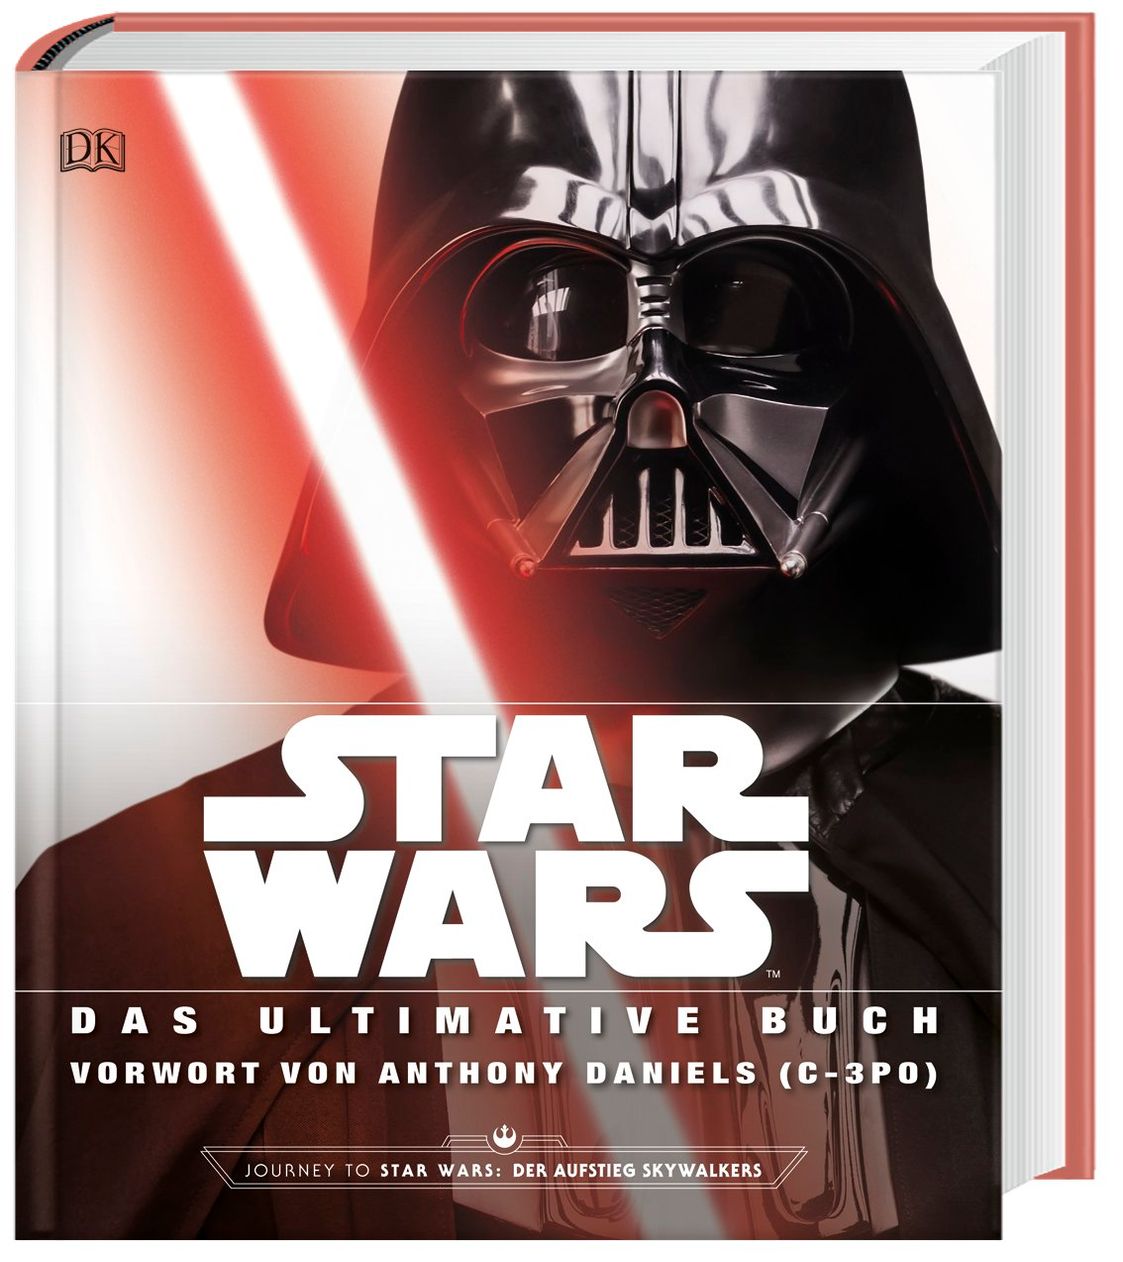 Star Wars TM Das ultimative Buch Buch versandkostenfrei bei Weltbild.at